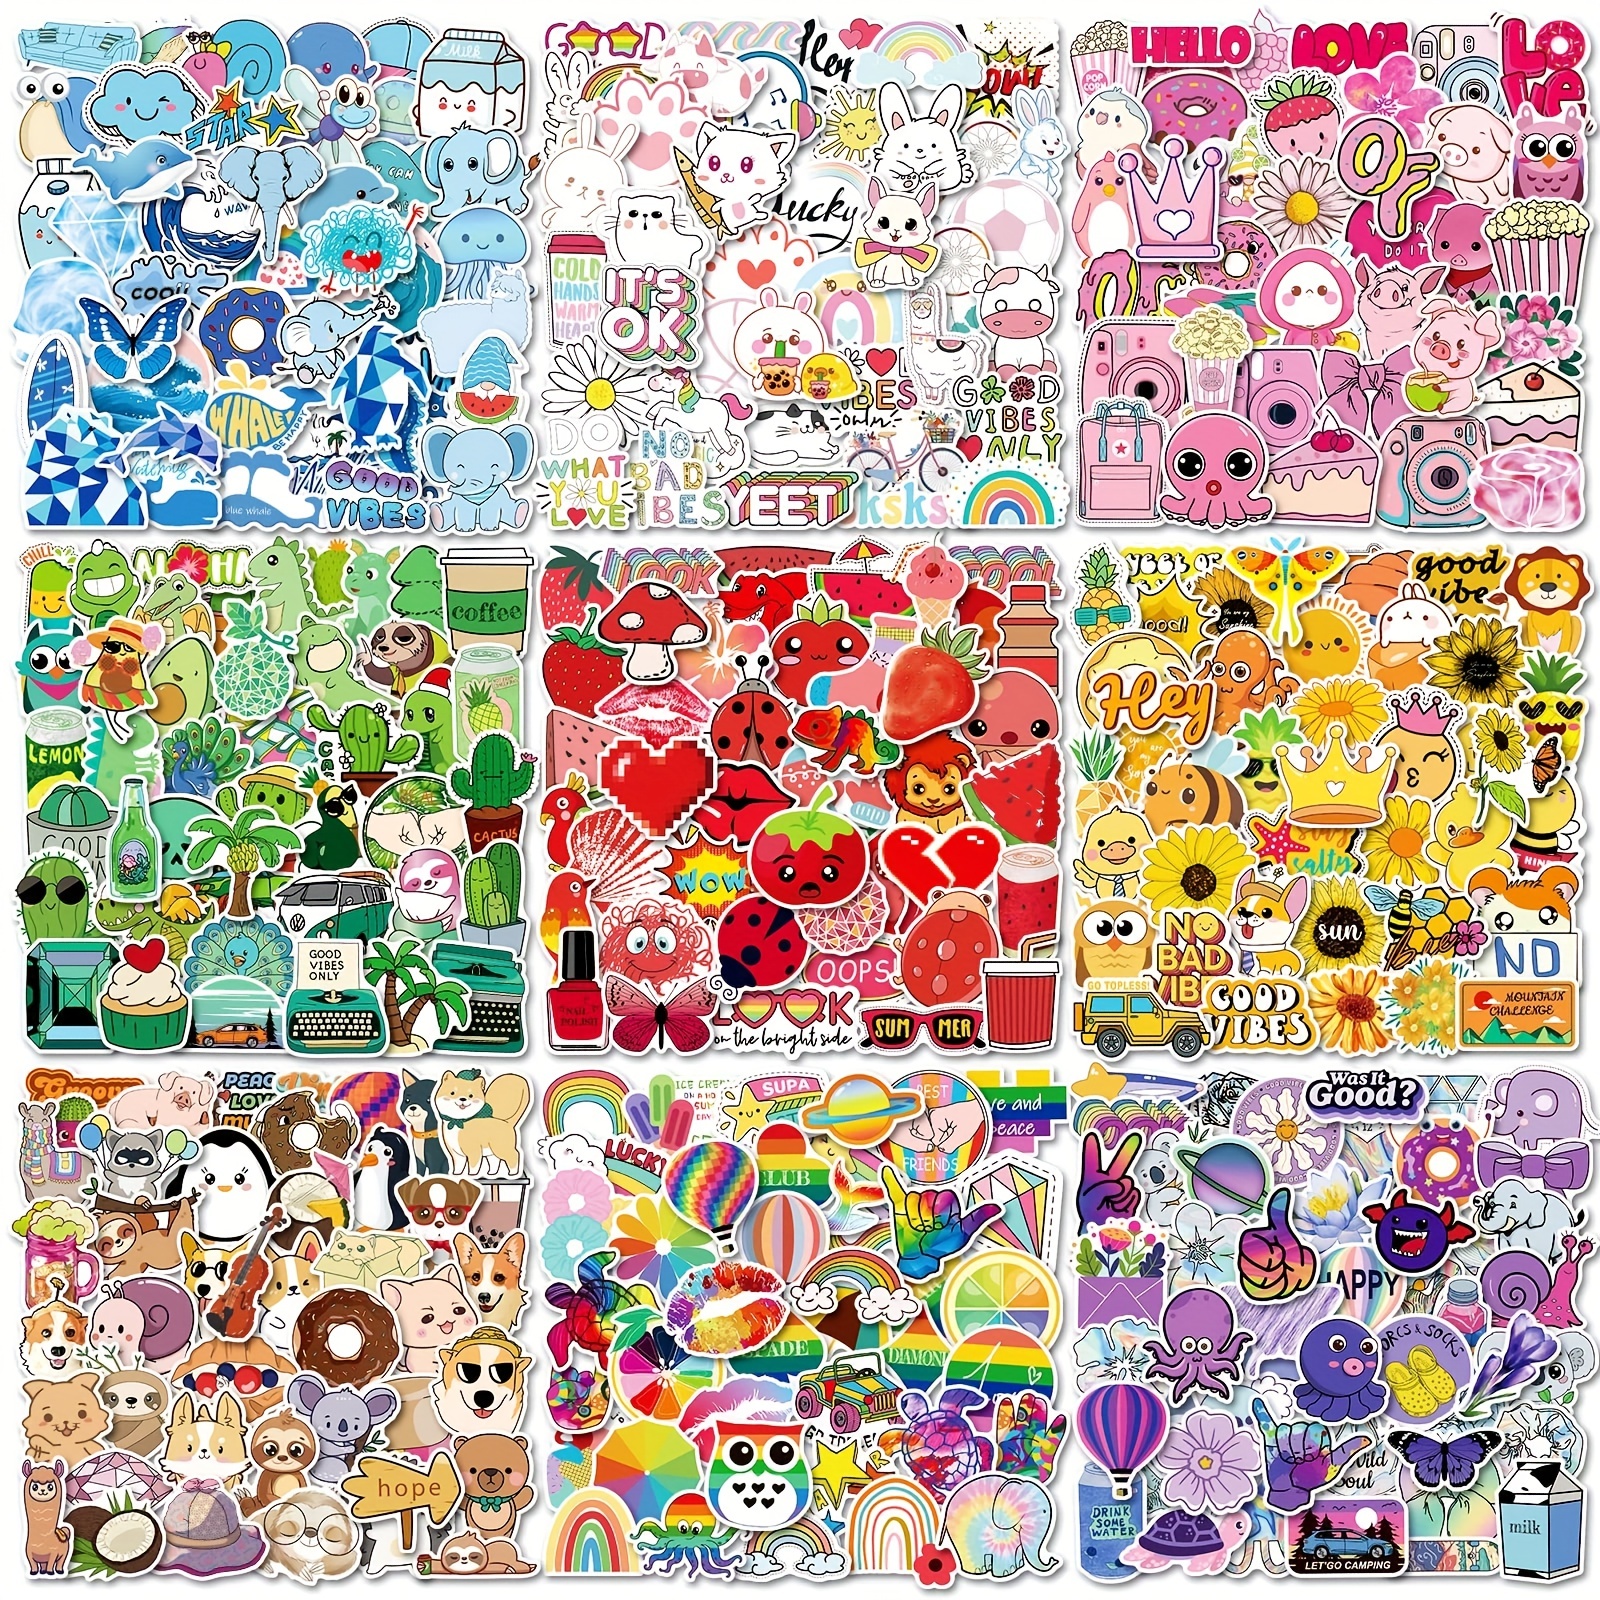 50Pcs Hatsune Miku Stickers - Wholesale Stickers